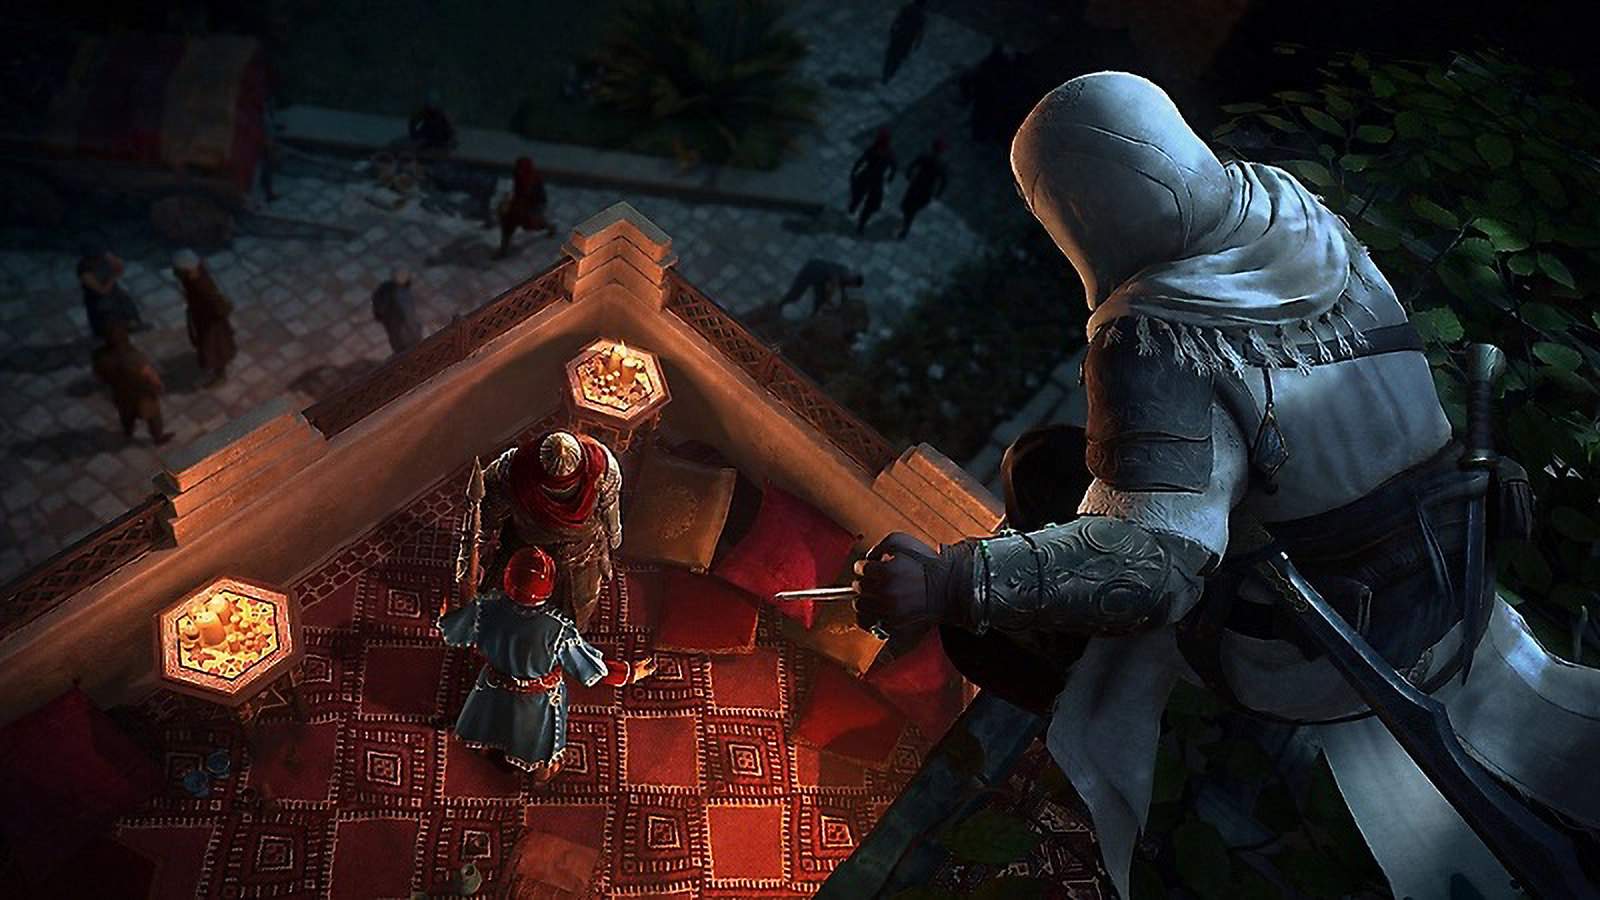 Assassin's Creed Mirage ganha requisitos mínimos e recomendados no PC –  Fato Novo